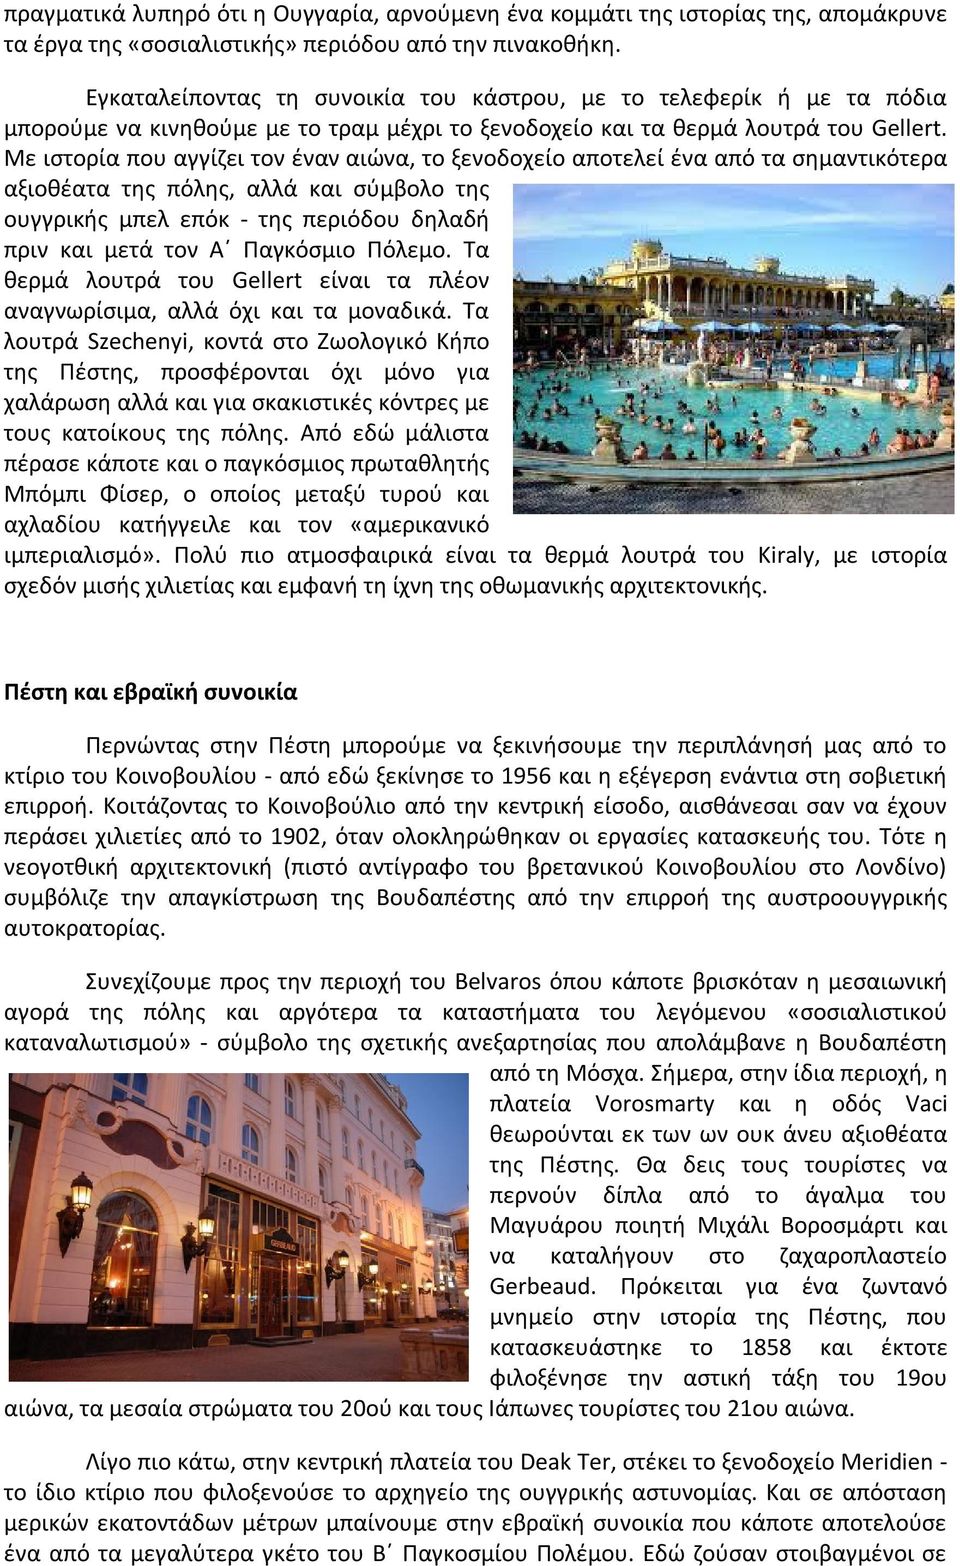 Με ιστορία που αγγίζει τον έναν αιώνα, το ξενοδοχείο αποτελεί ένα από τα σημαντικότερα αξιοθέατα της πόλης, αλλά και σύμβολο της ουγγρικής μπελ επόκ - της περιόδου δηλαδή πριν και μετά τον Α